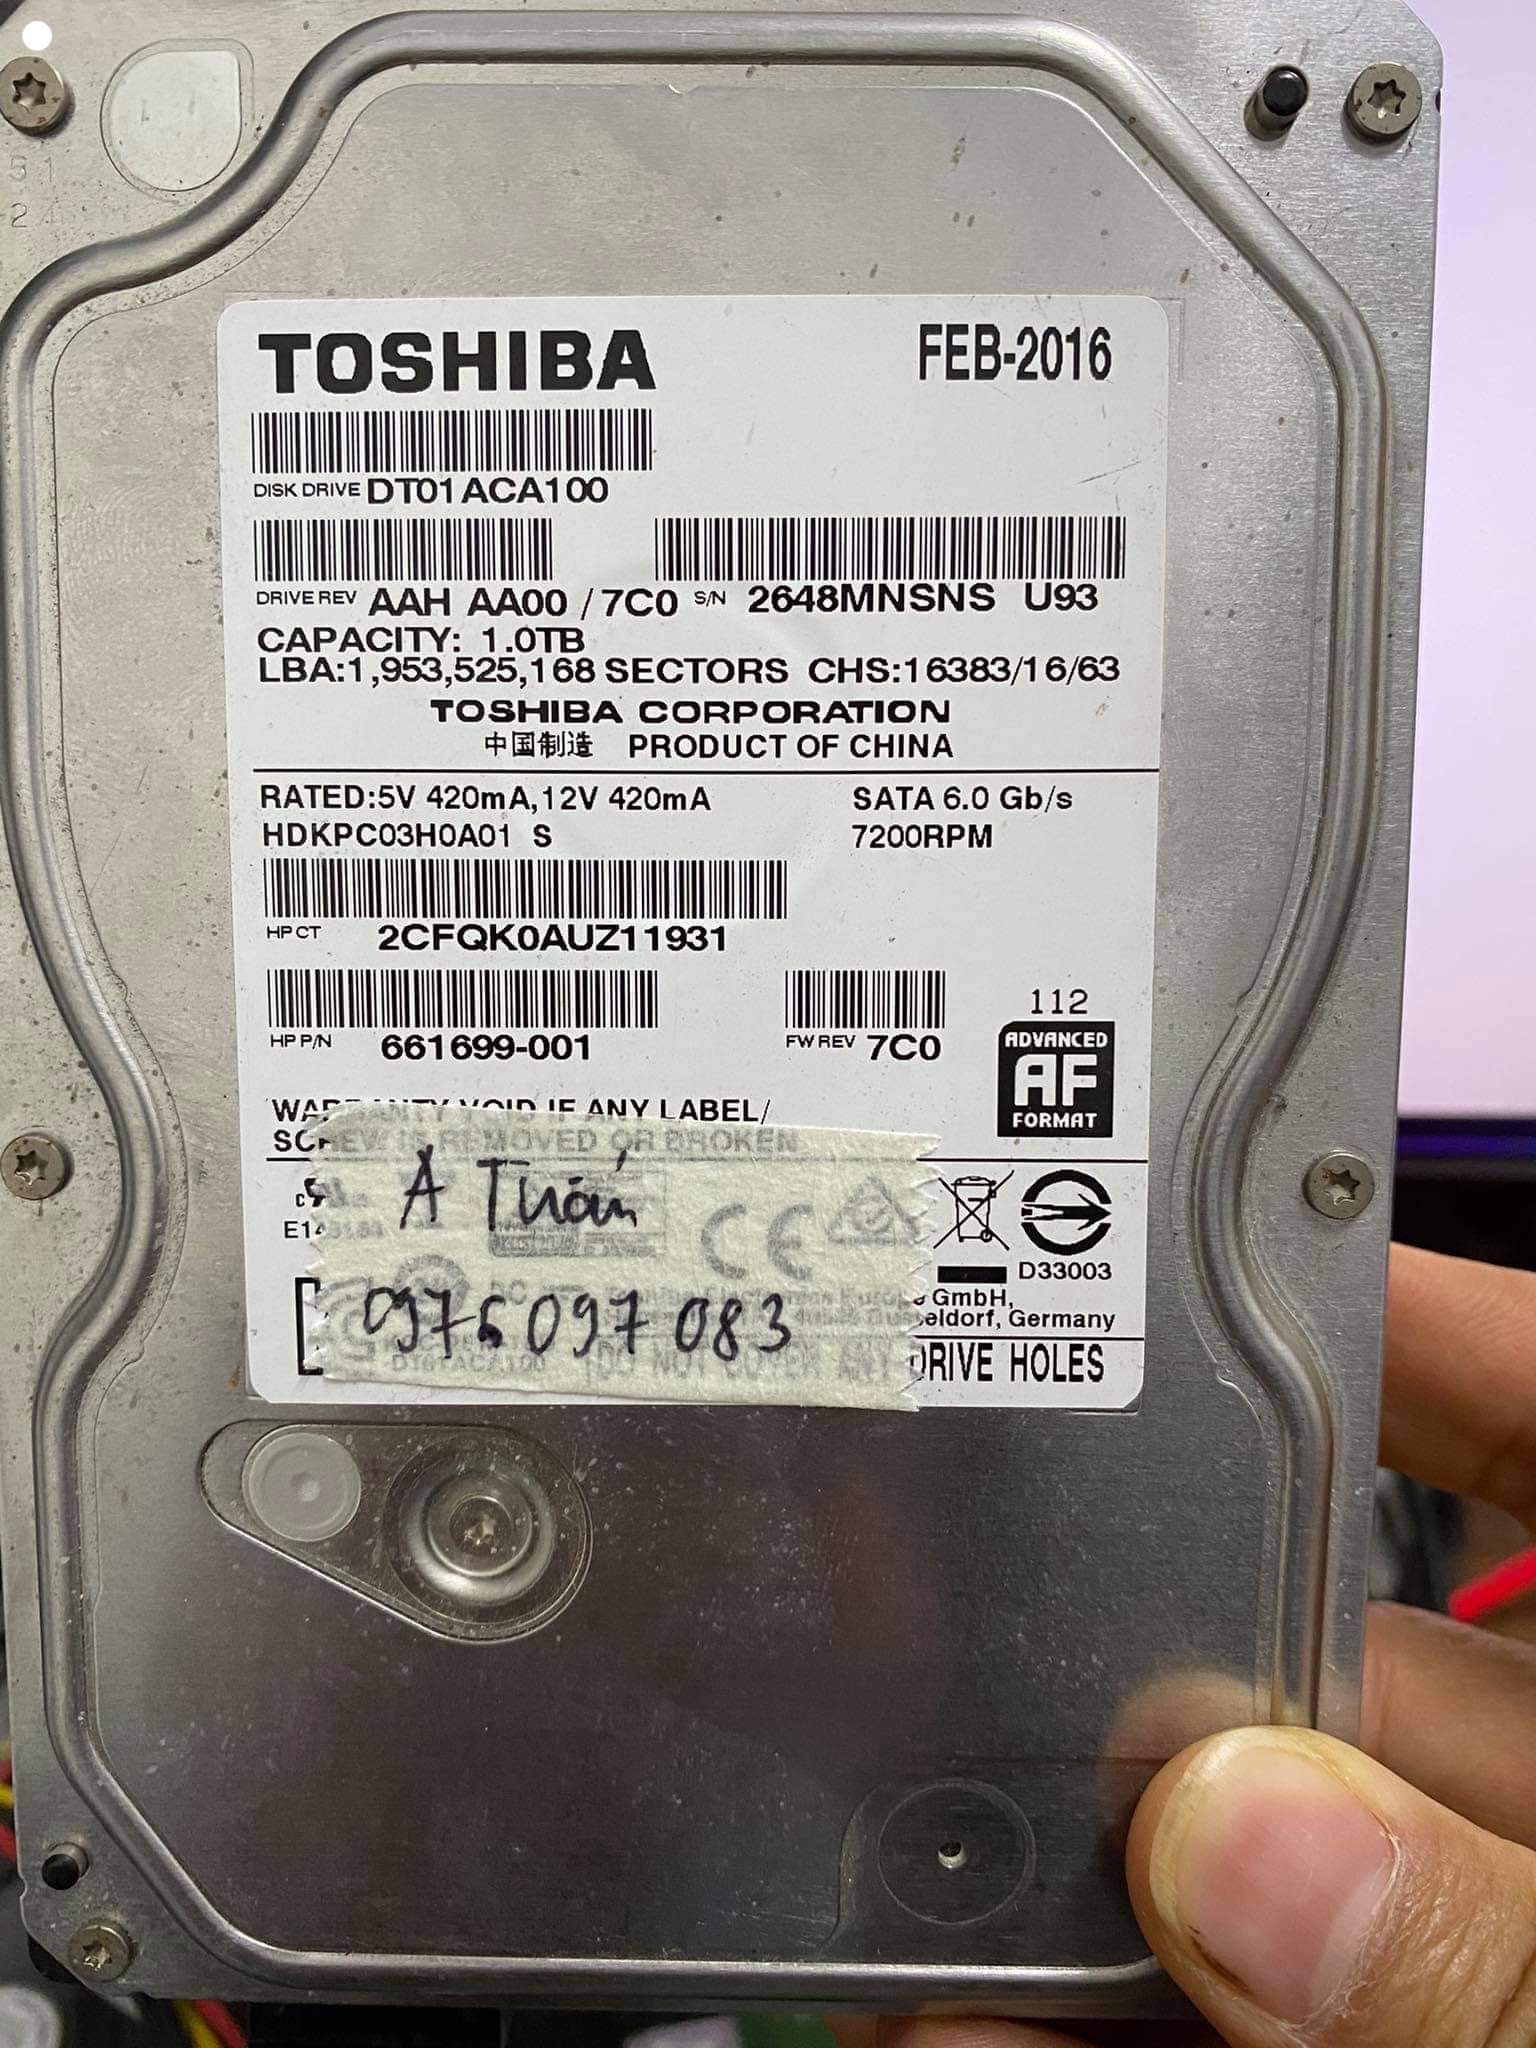 Khôi phục dữ liệu ổ cứng Toshiba 1TB lỗi đầu đọc - 08/12/2020 - cuumaytinh